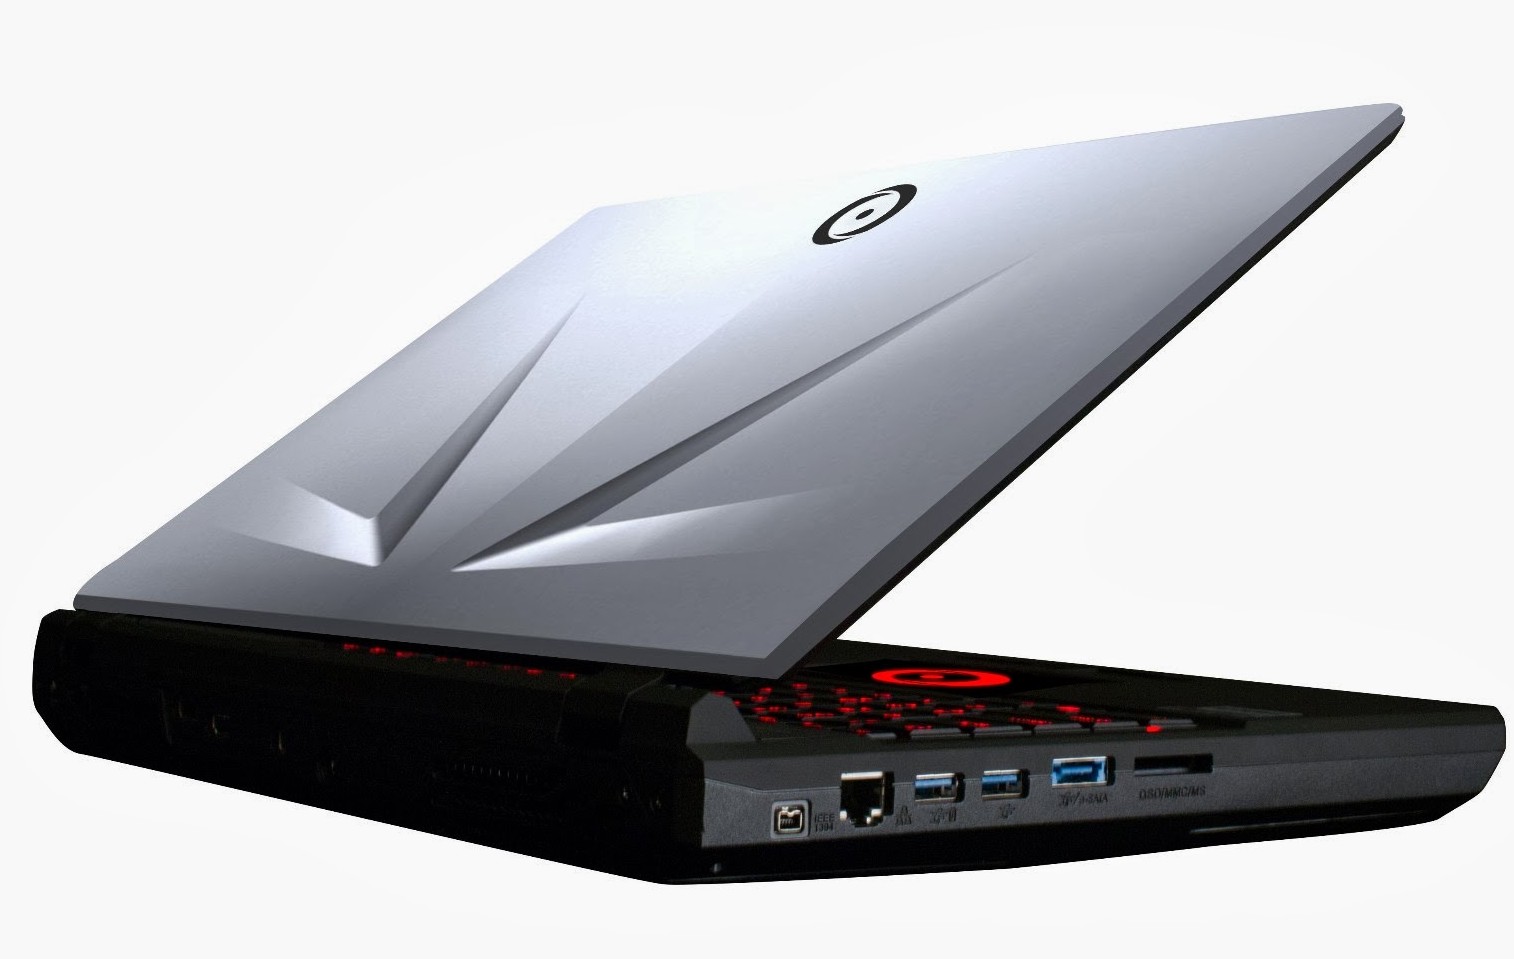 Sở hữu laptop EON của Origin PC để có trải nghiệm chơi game tốt nhất. Với cấu hình mạnh mẽ và hiệu năng ấn tượng, EON là sự lựa chọn tuyệt vời cho những game thủ đích thực. Nhấn vào hình ảnh để khám phá thêm về EON và Origin PC.